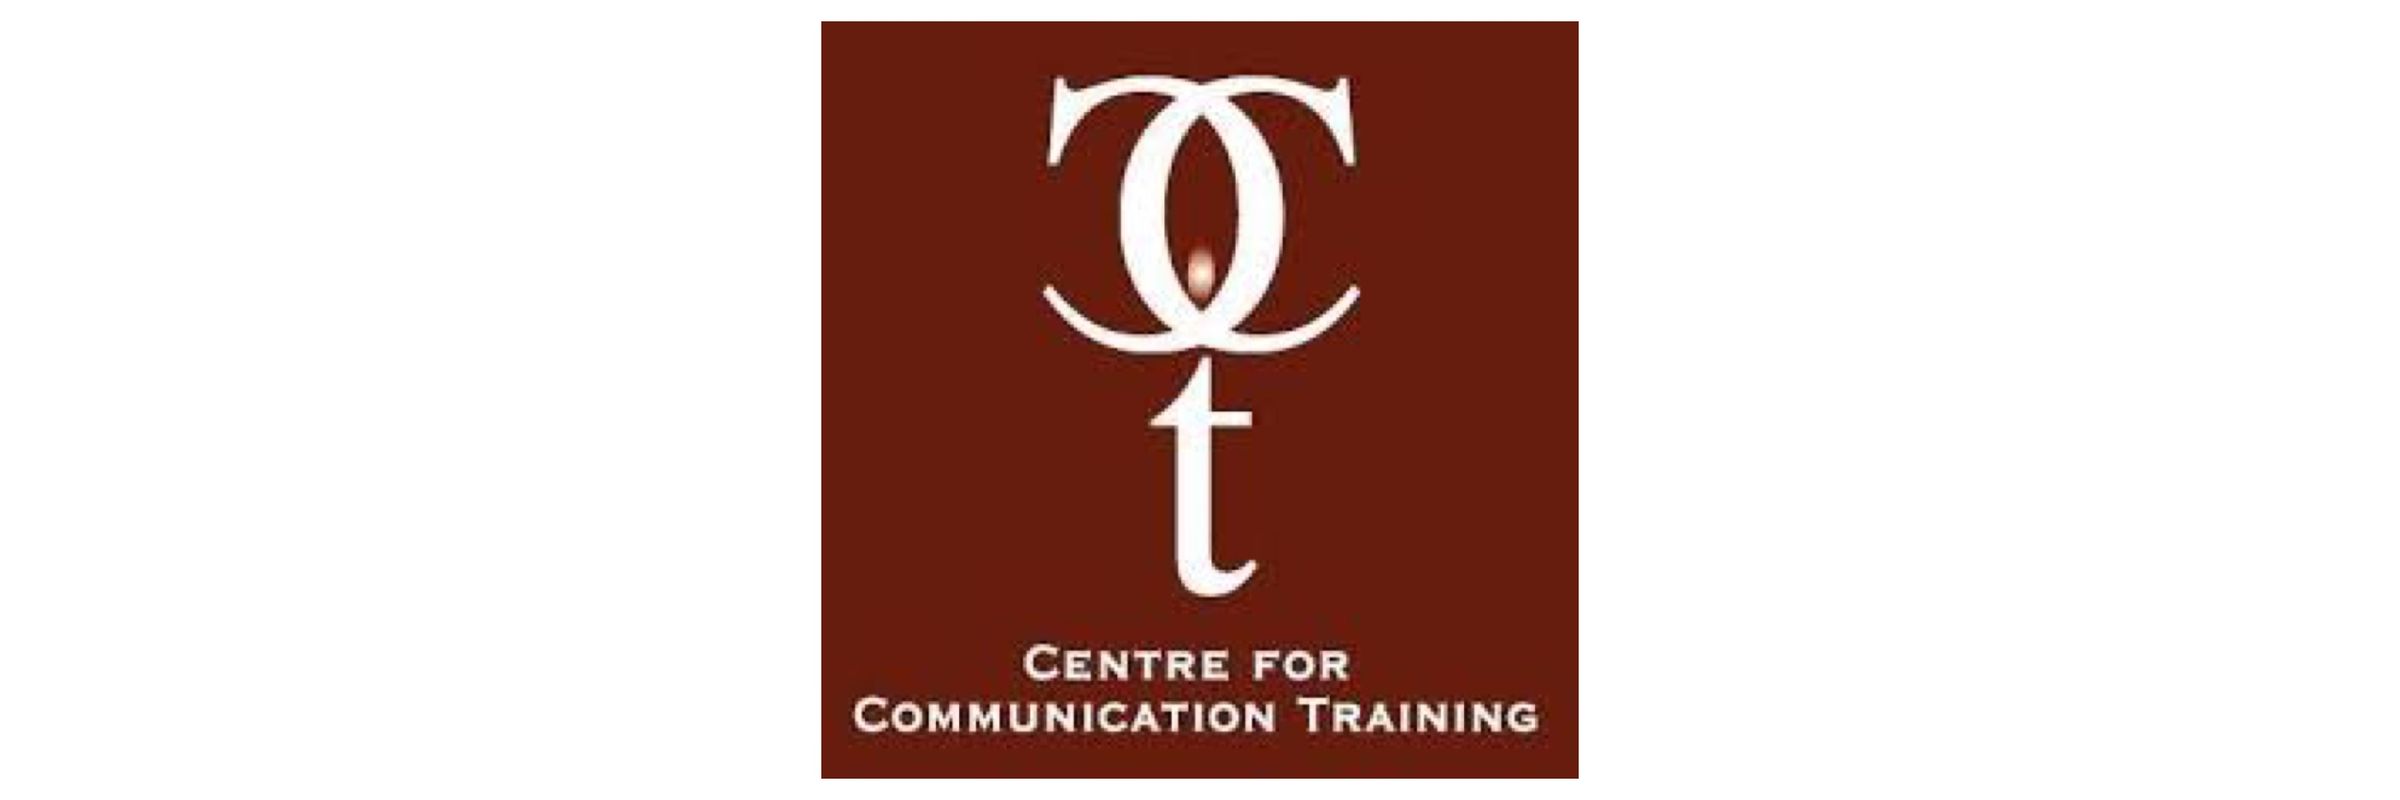 Center for Communication Learning